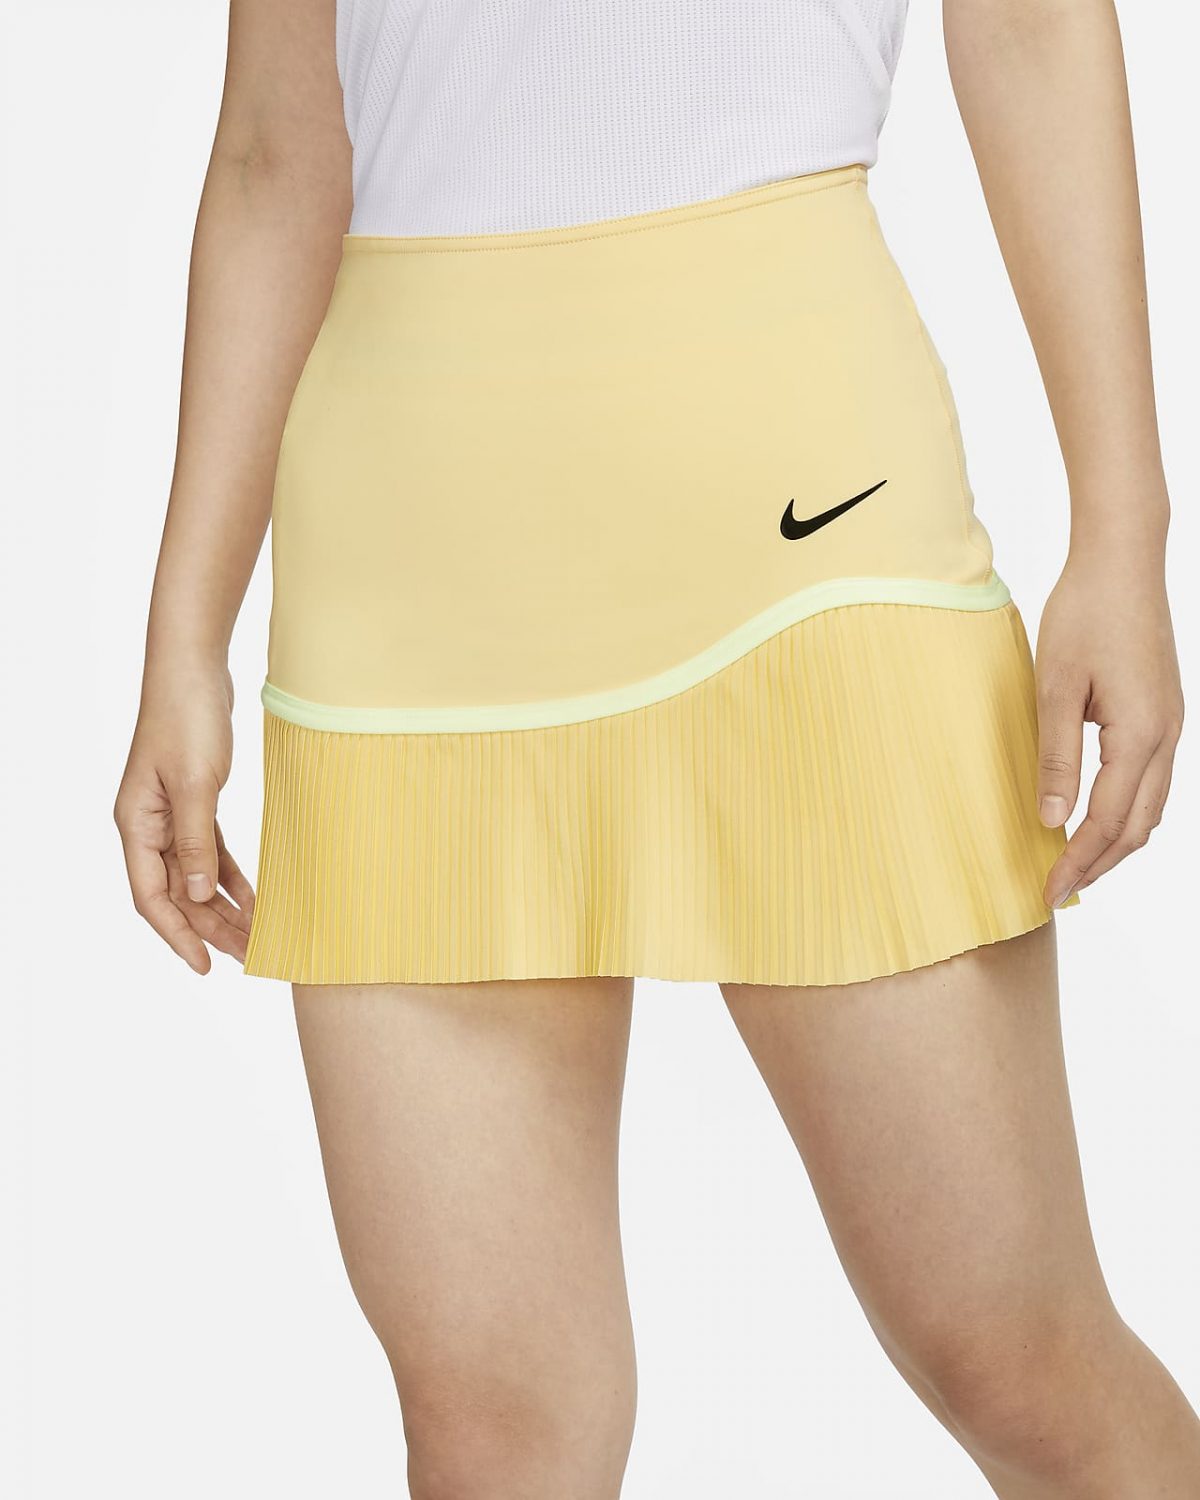 Женская юбка Nike Advantage фотография